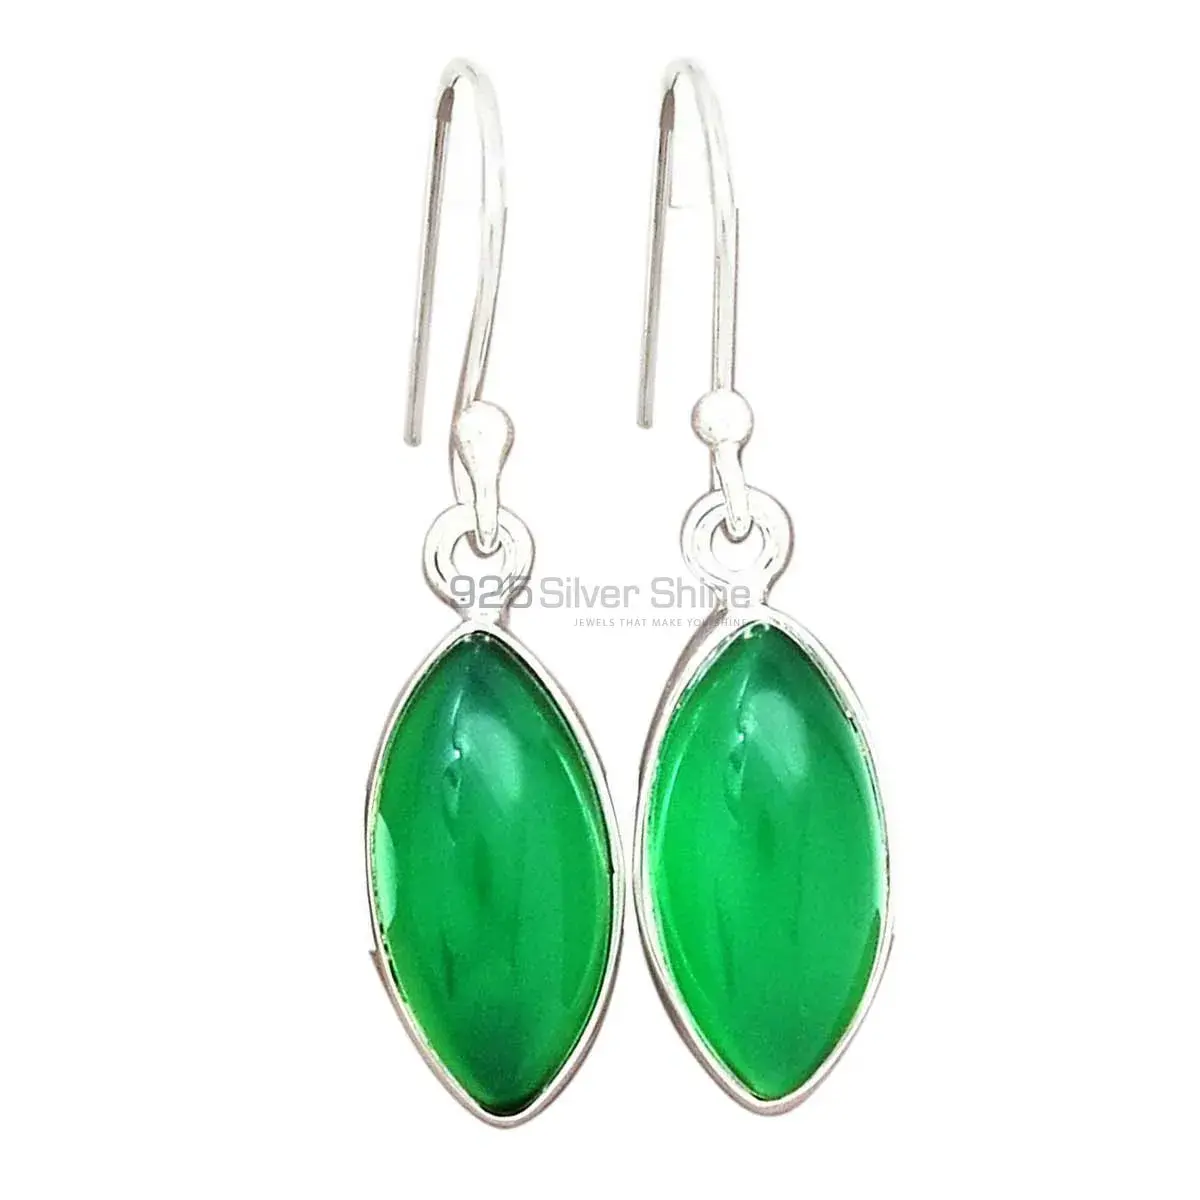 Best Design 925 Sterling Silver Earrings In Green Onyx Gemstone Jewelry 925SE2226